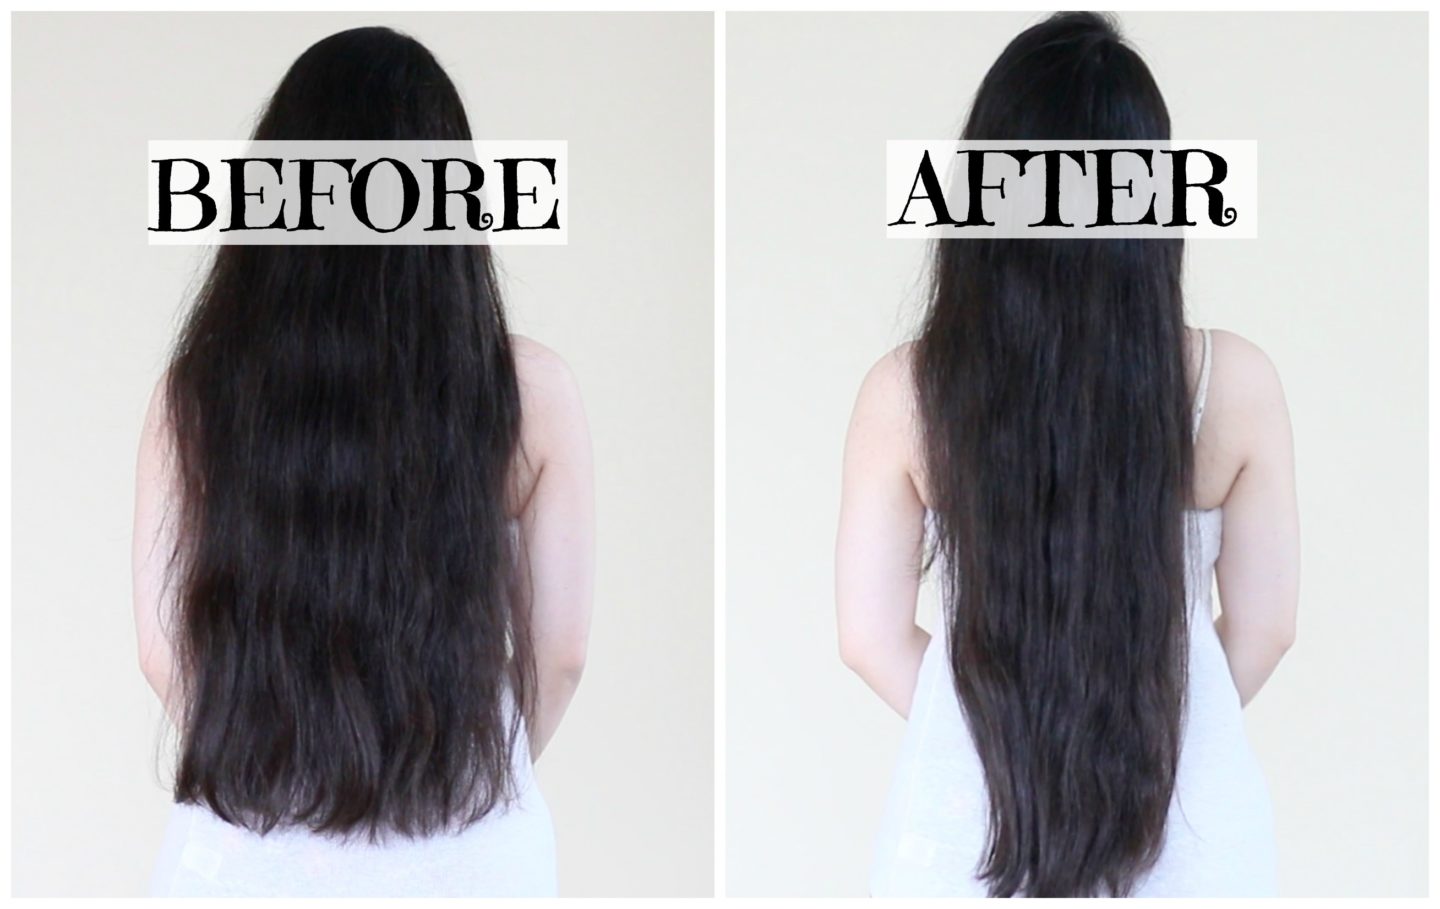 كيفية تحضير الوصفات الطبيعية لتطويل الشعر ؟